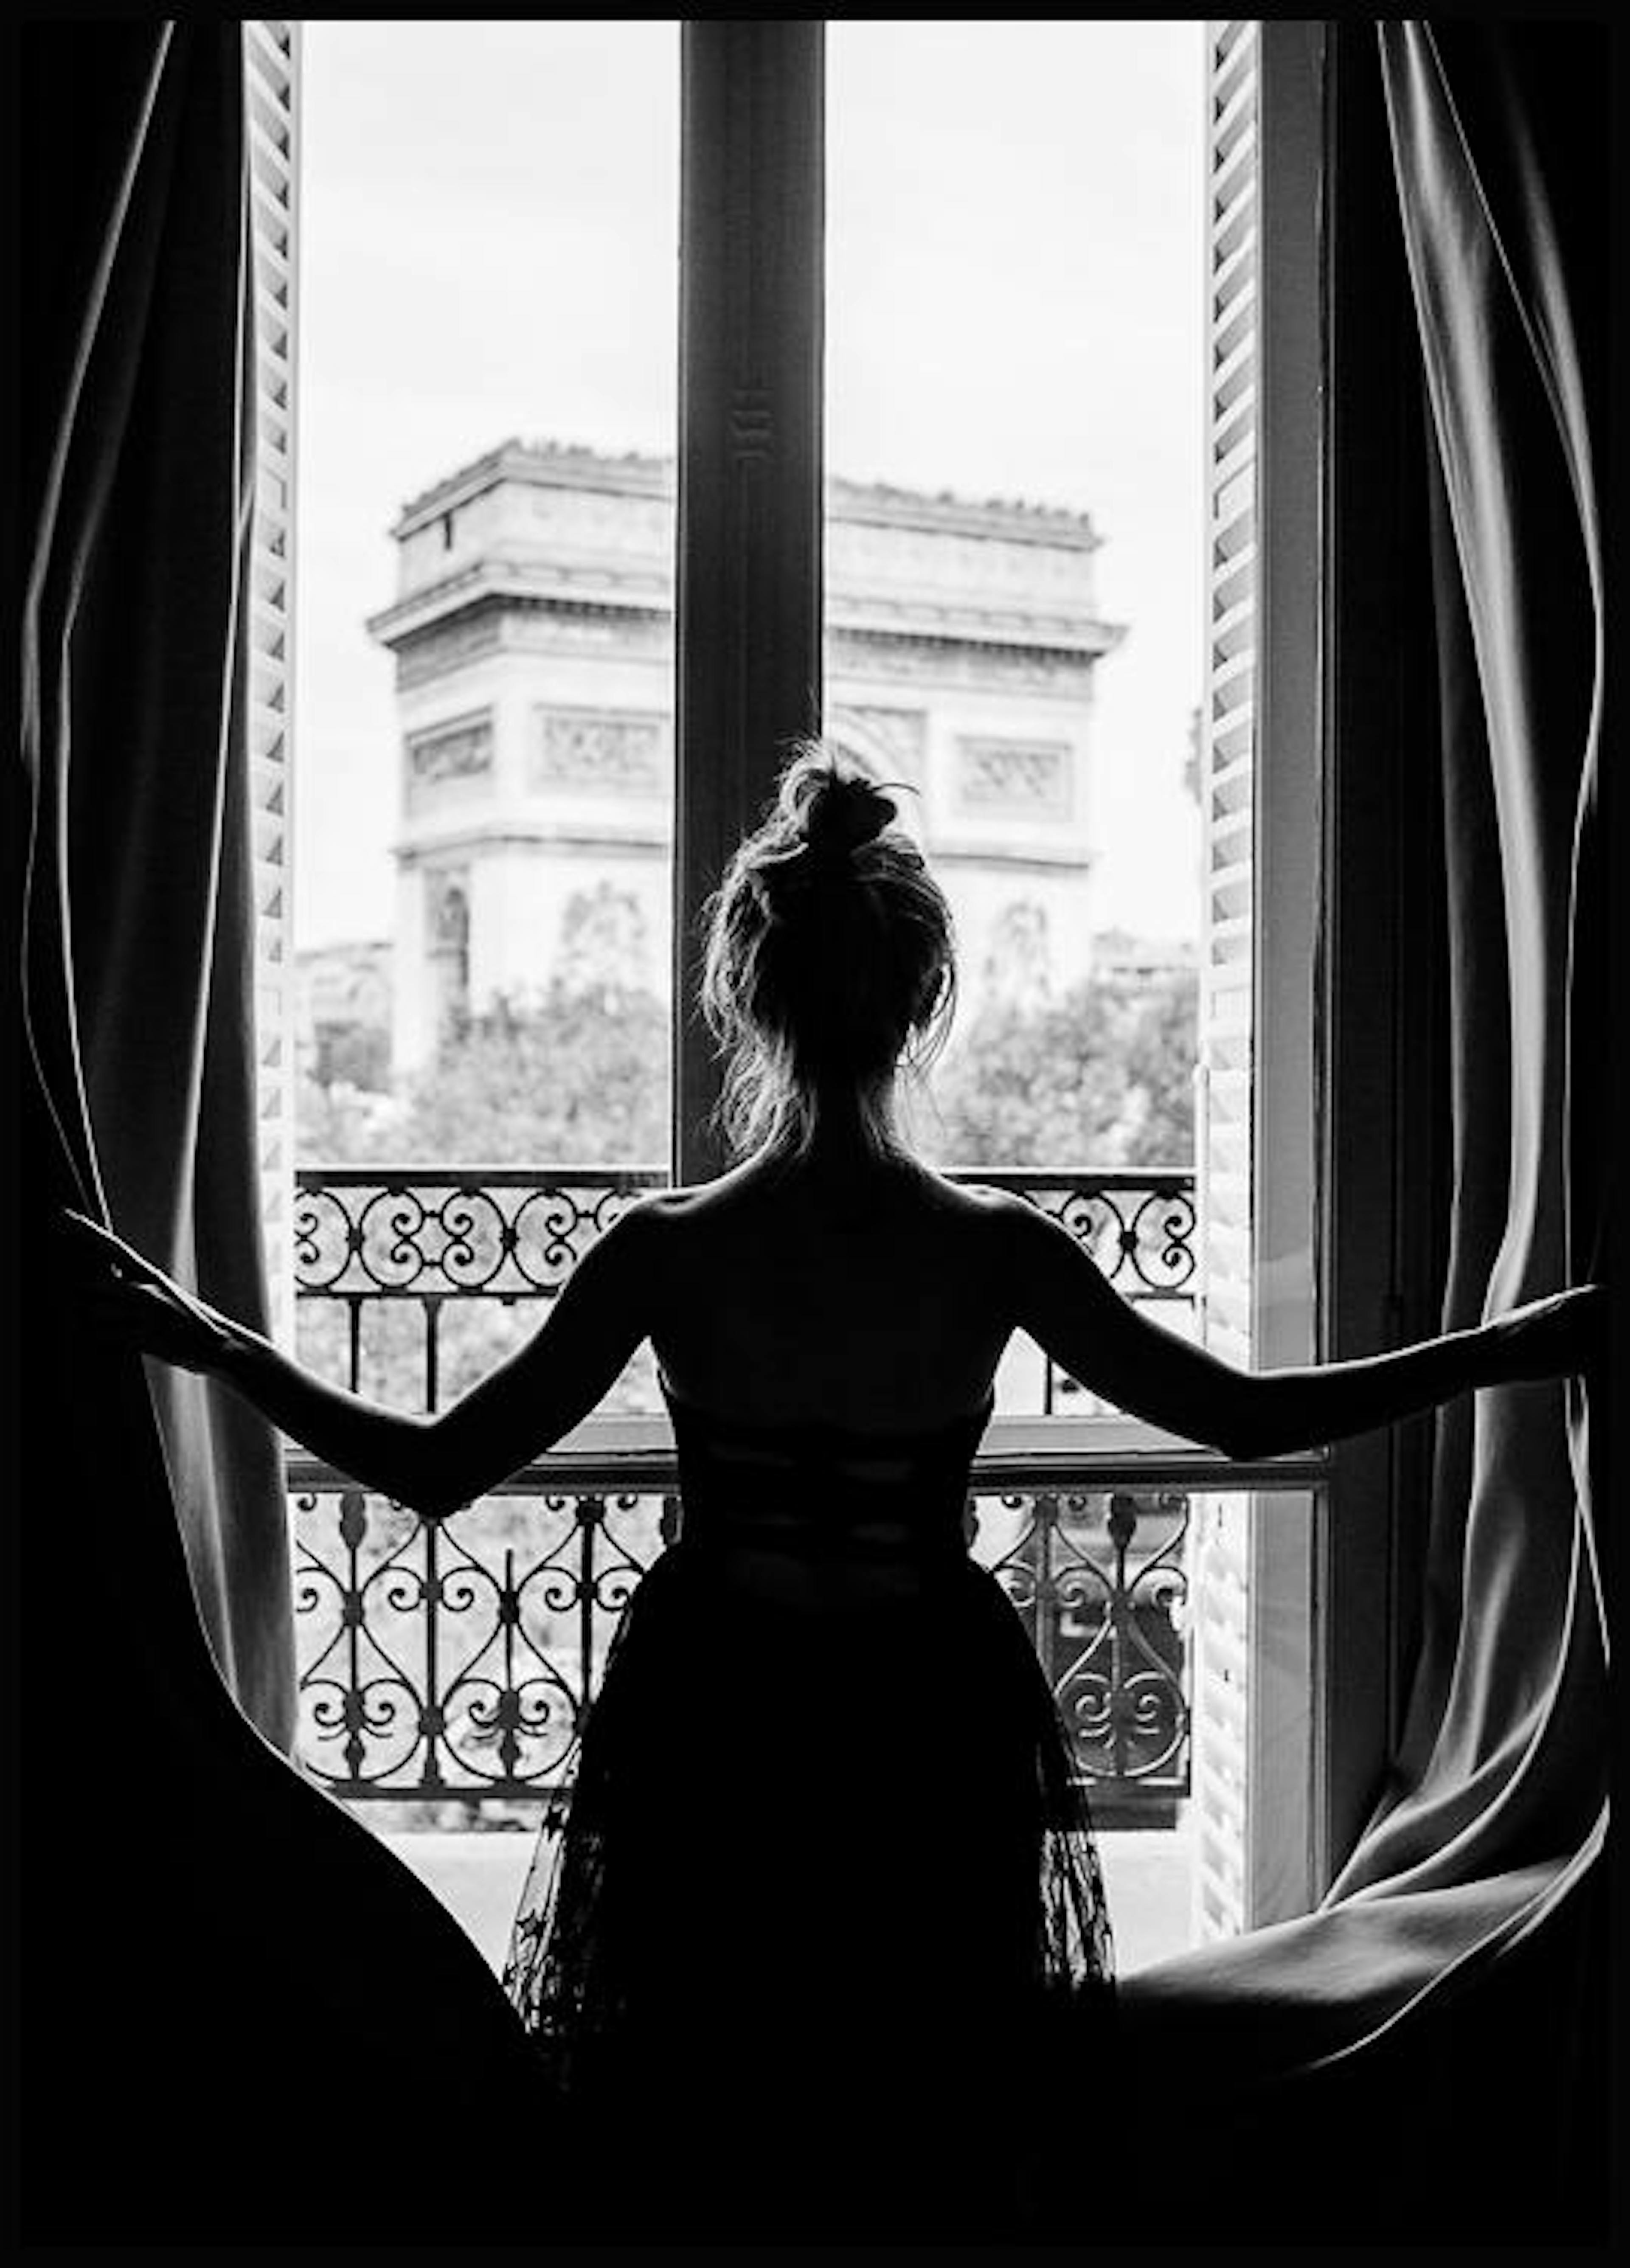 Girl in Paris Window. Poster 0